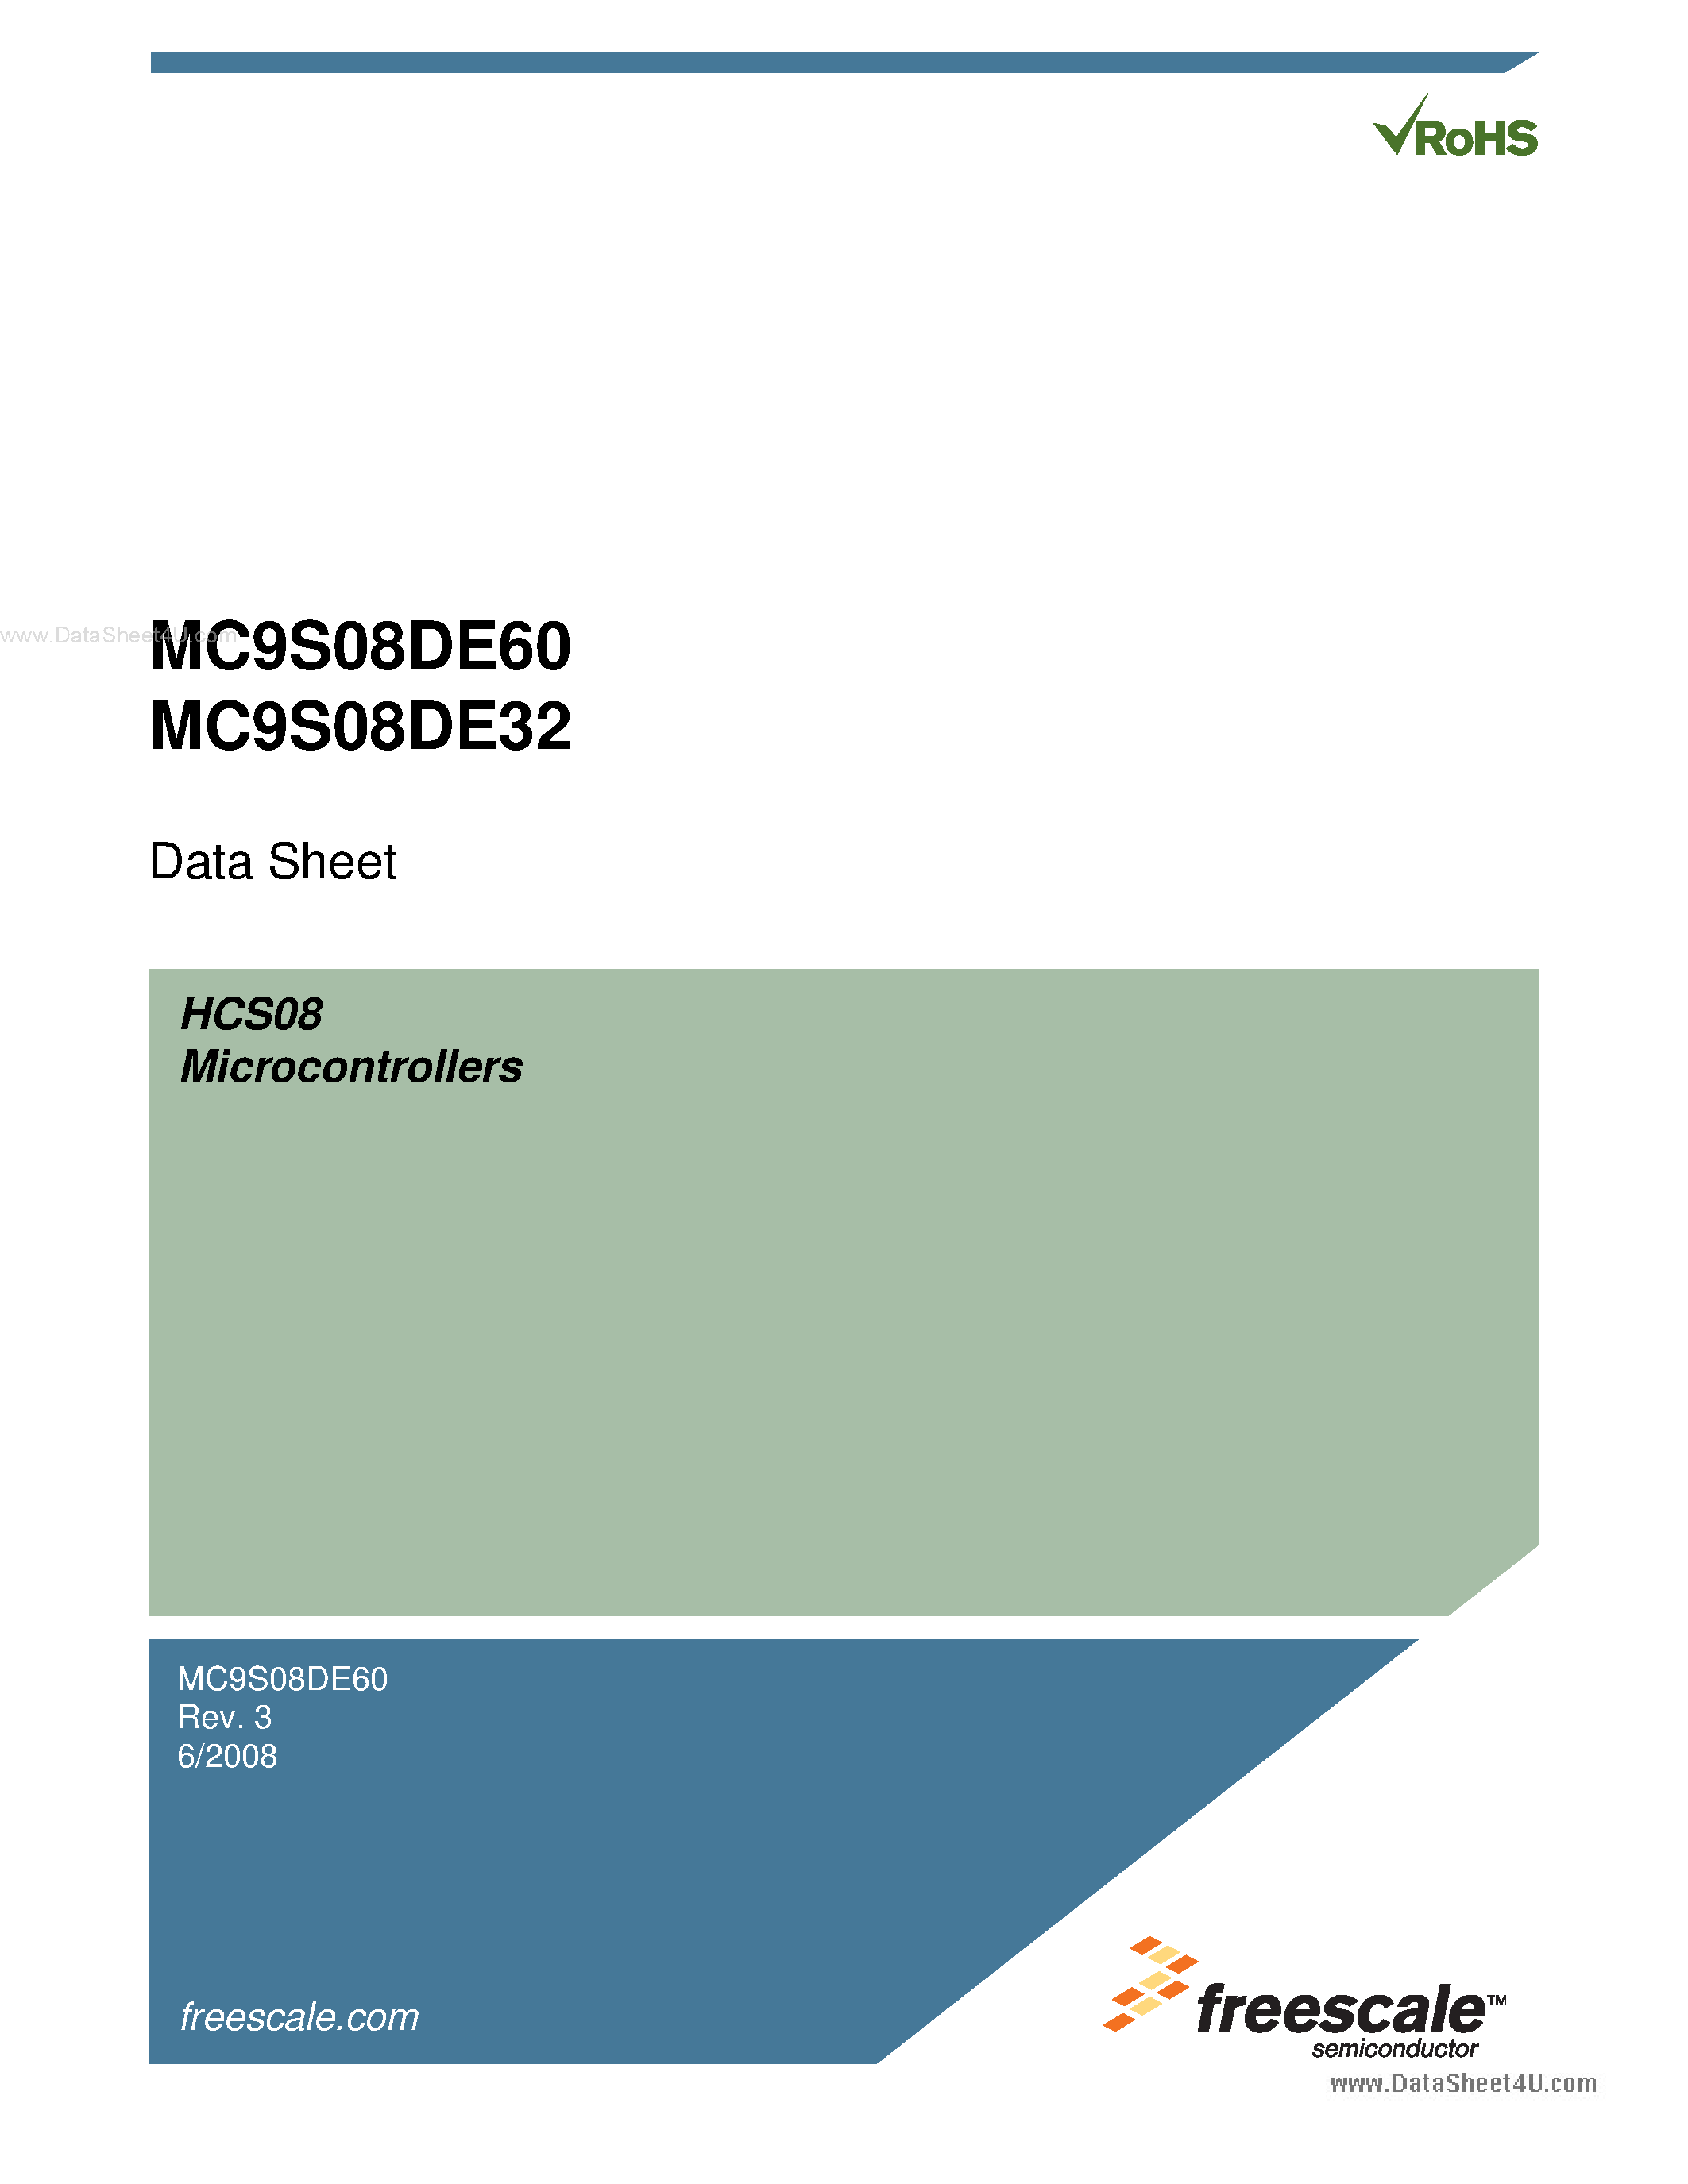 Datasheet MC9S08DE32 - (MC9S08DE32 / MC9S08DE60) Microcontrollers page 1